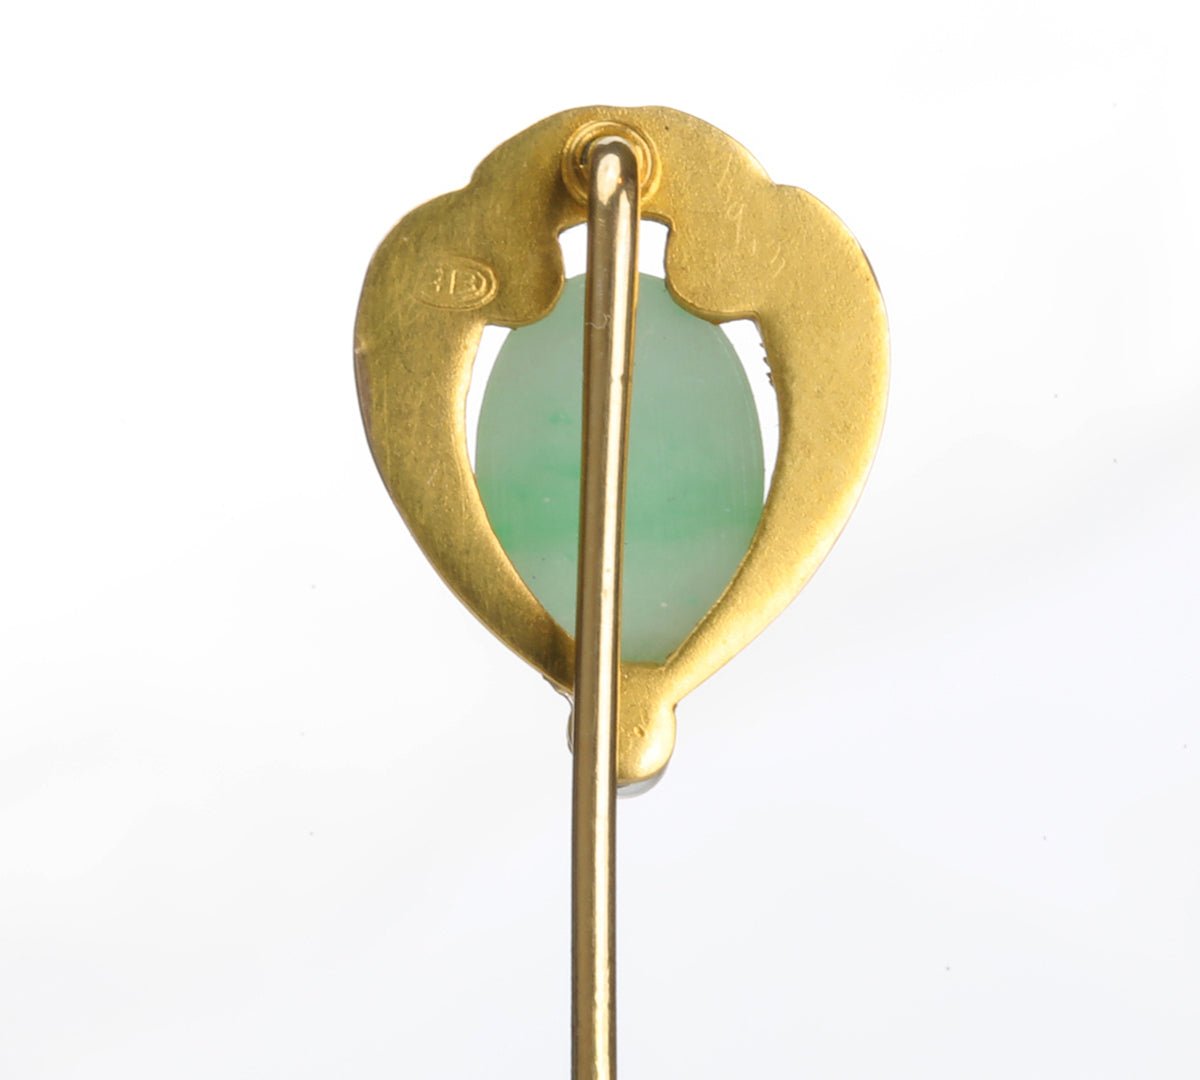 Antique Bressler & Co. Gold Jade Pearl Stick Pin